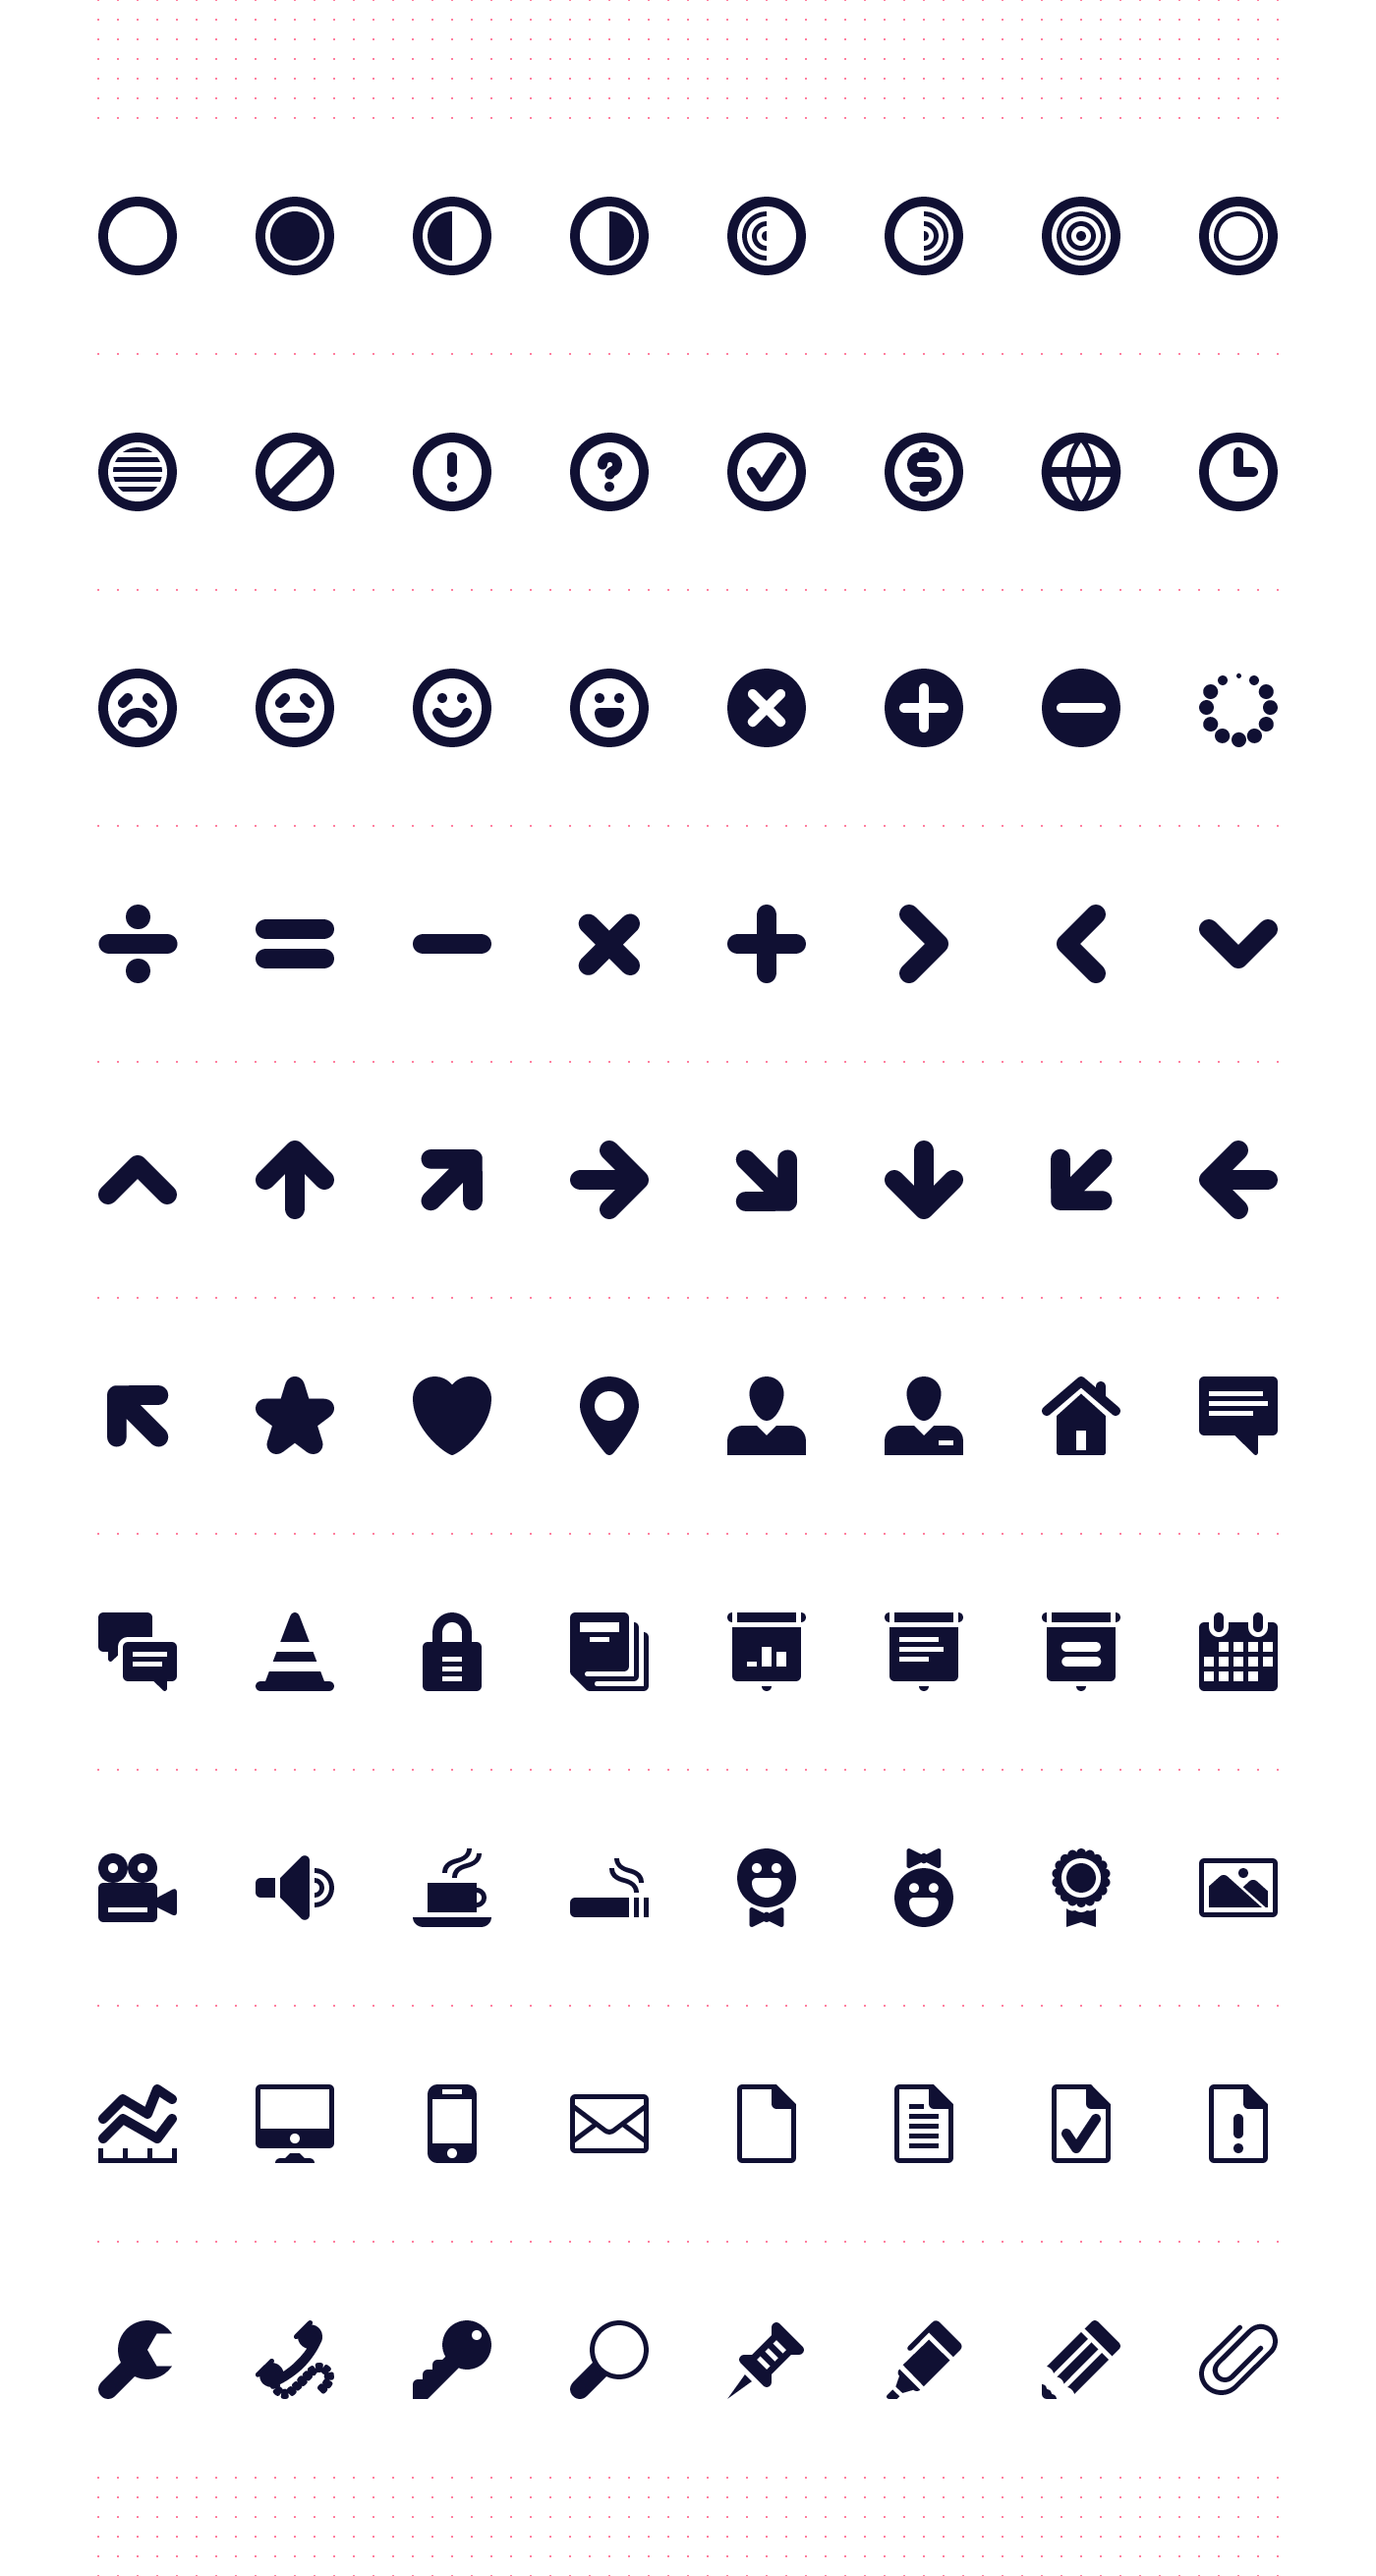 Adobe Portfolio icons pictograms icon font web icons